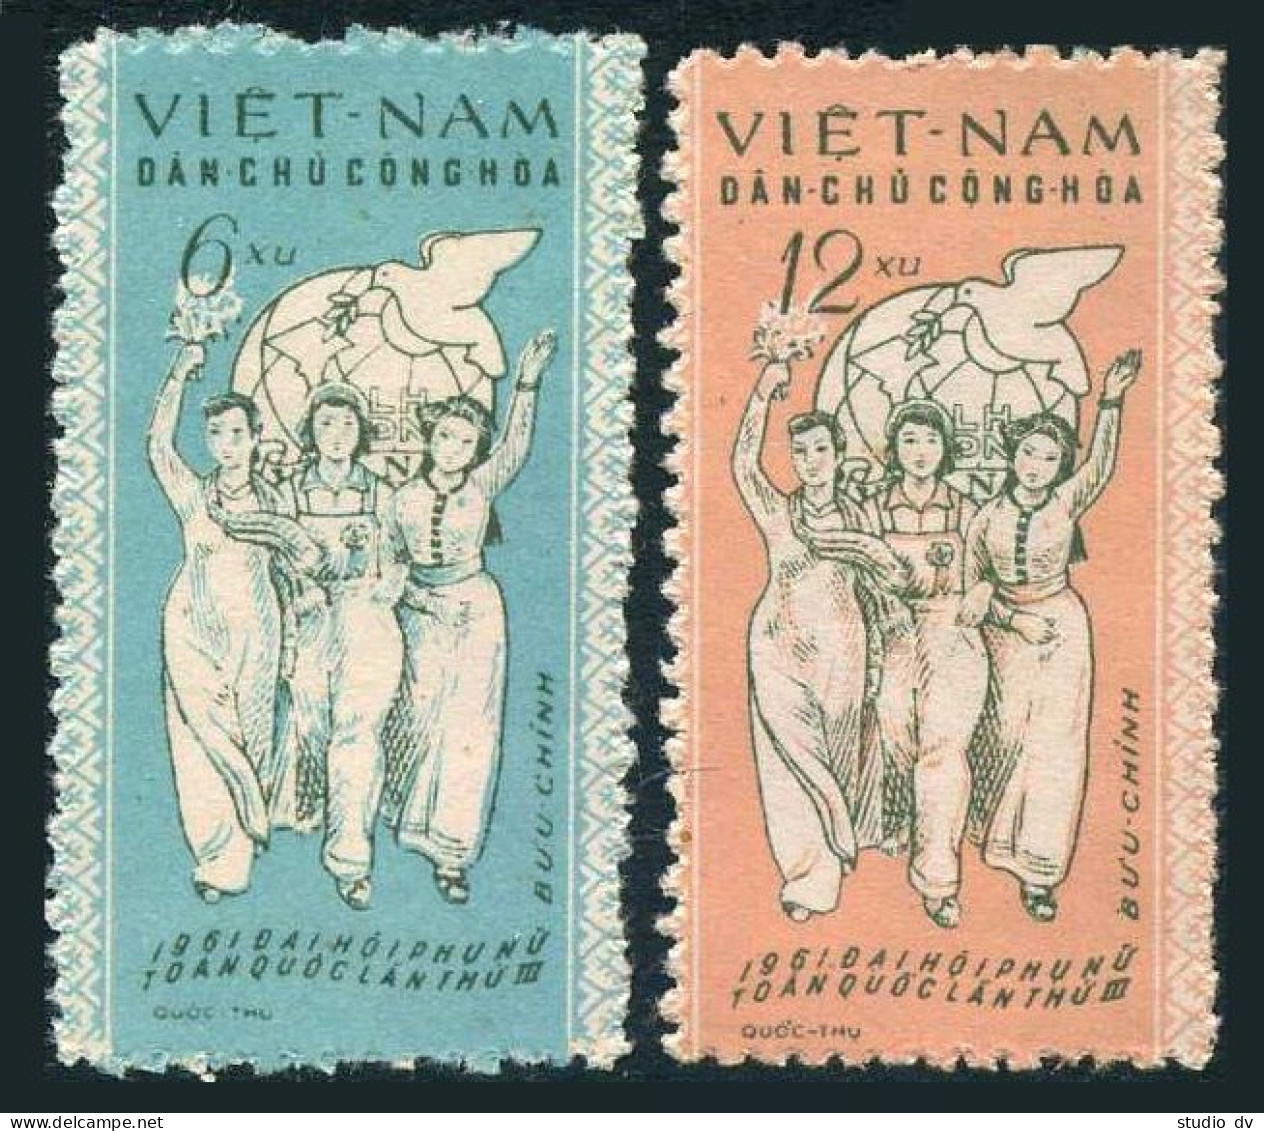 Viet Nam 146-147,MNH.Michel 152-153. Vietnamese Women Union,3rd Congress.1961. - Vietnam